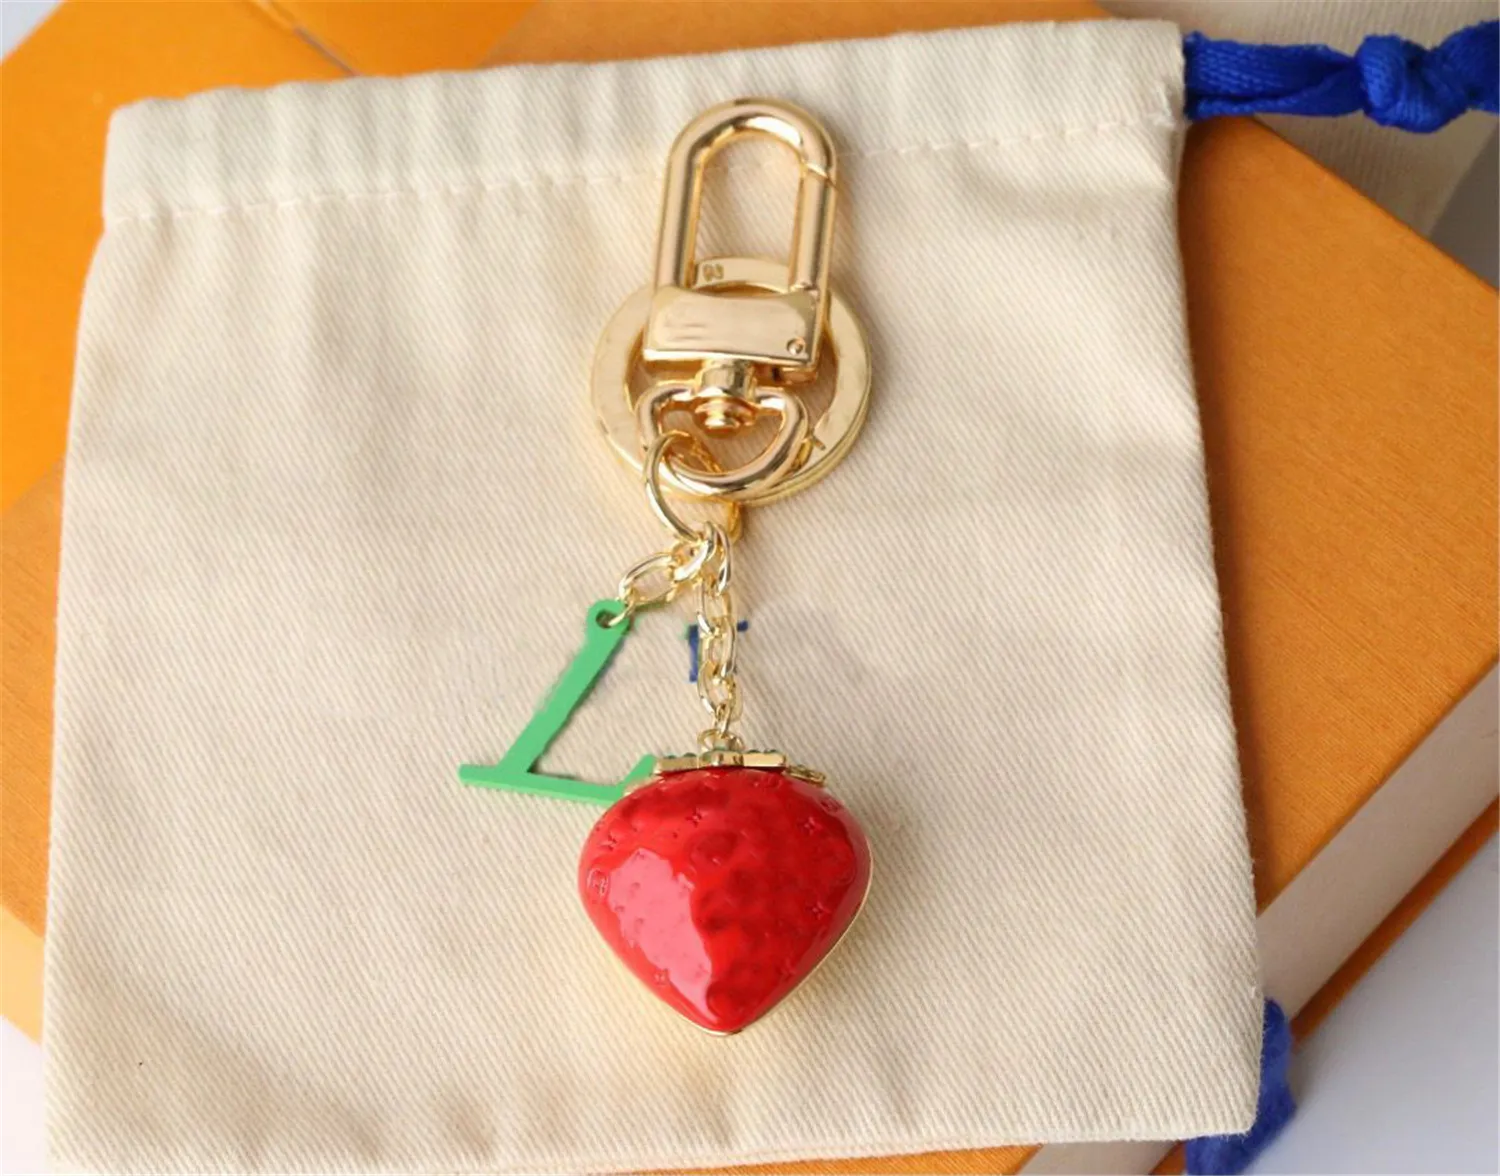 디자이너 브랜드 열쇠 고리 패션 가방 자동차 열쇠 고리 꽃 디자인 딸기 액세서리 고품질 남성 여성 장식 가방 펜던트